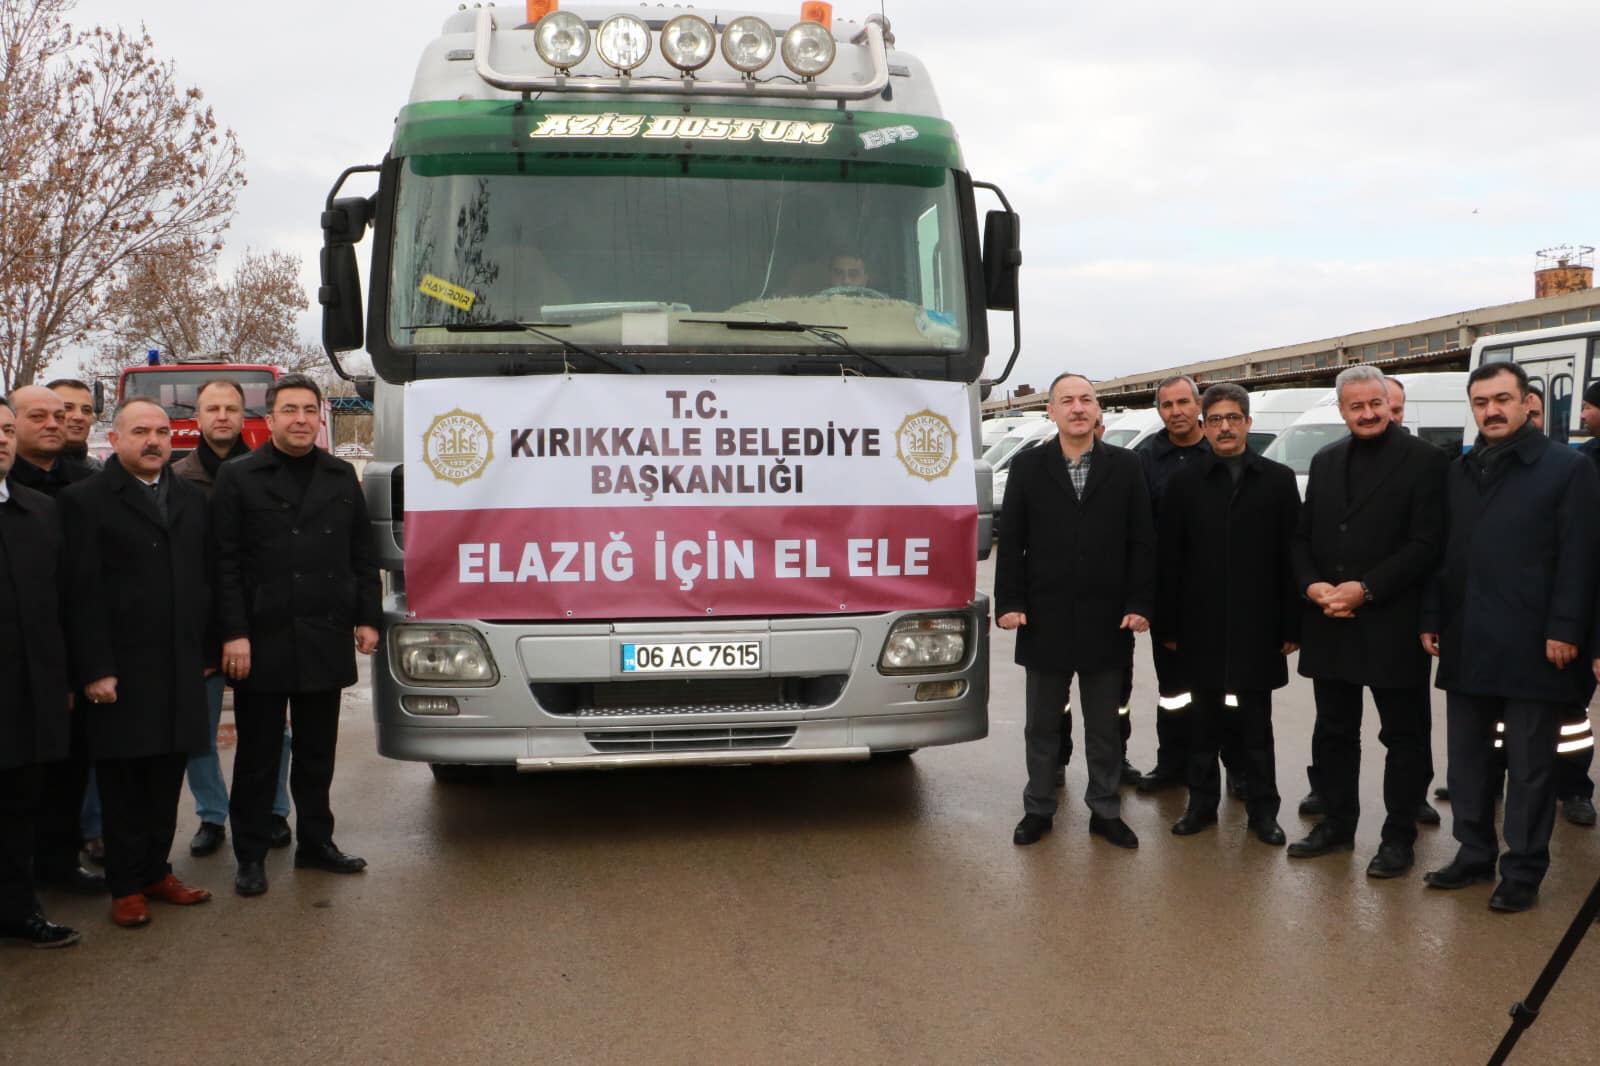 Kırıkkale Belediyesi’nden Elazığ’a yardım eli - Kırıkkale Haber, Son Dakika Kırıkkale Haberleri